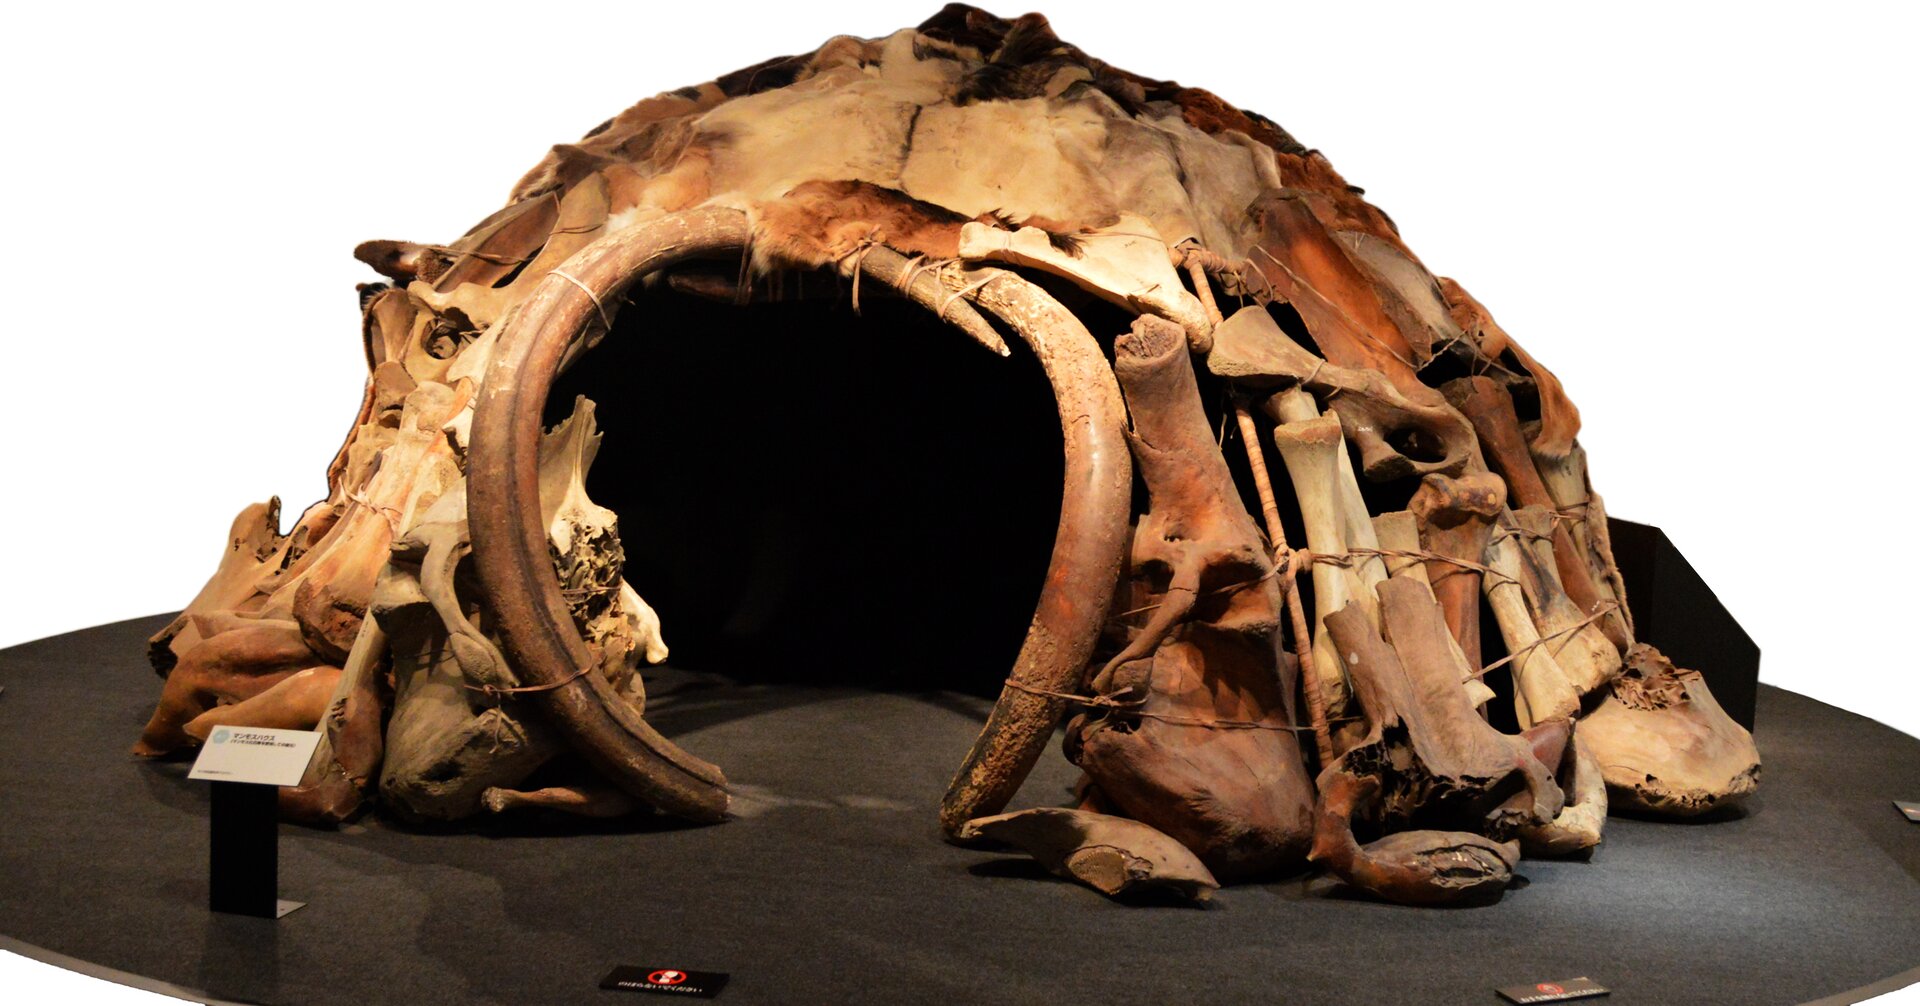 Ilustracja przedstawia szałas wybudowany z kości zwierzęcia, pokryty skórami. Widok współczesny.